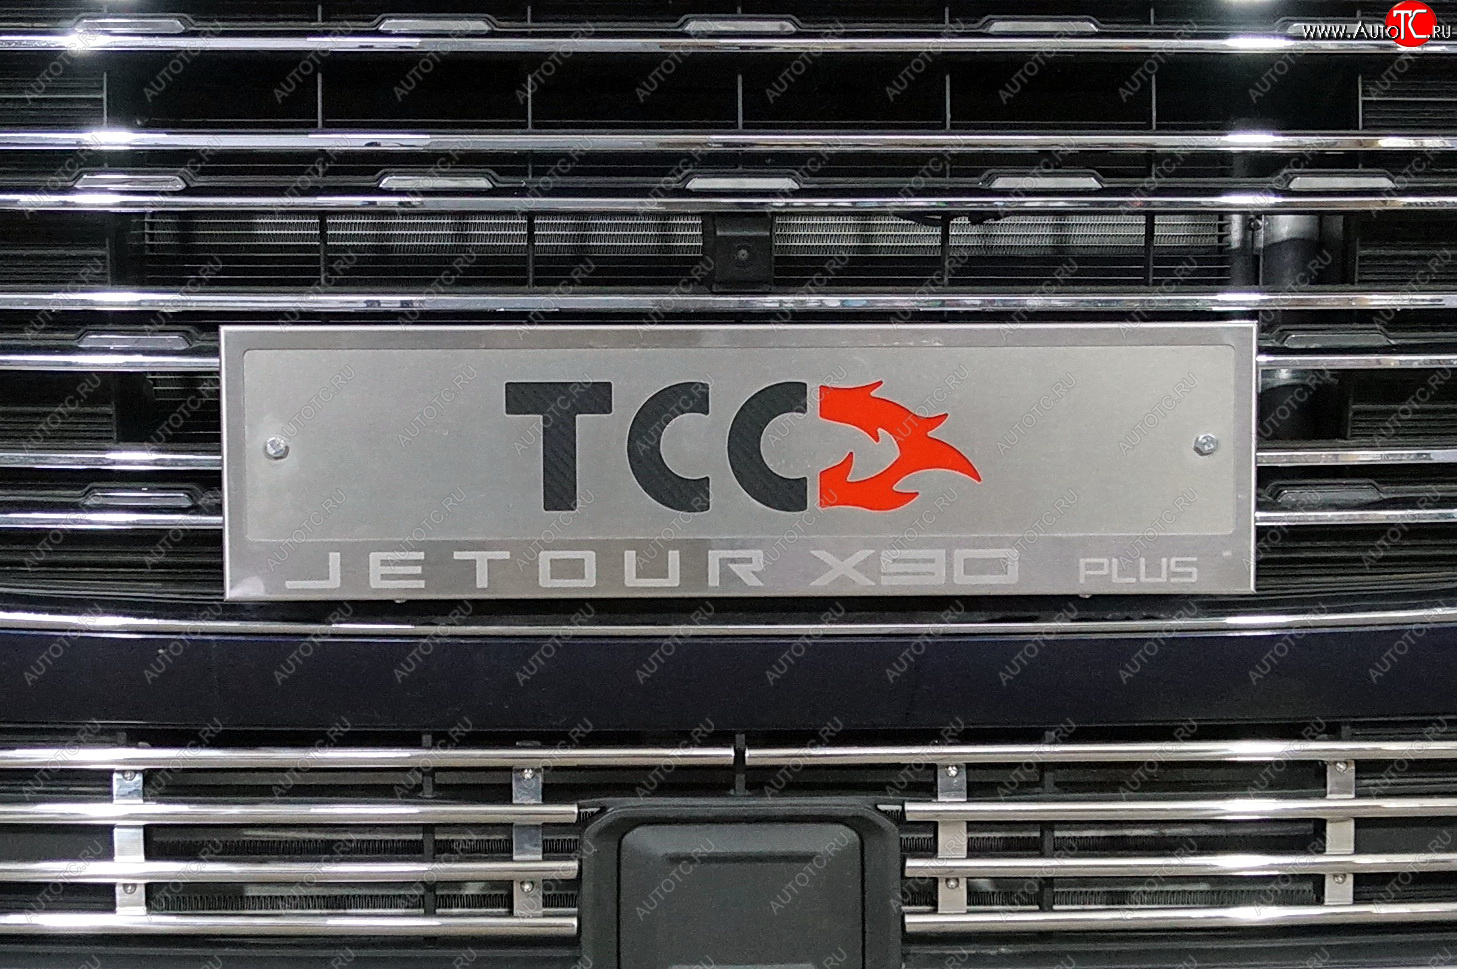 4 999 р. Рамка гос. номера ТСС Тюнинг  Jetour X90 Plus (2021-2024) (нержавейка)  с доставкой в г. Калуга